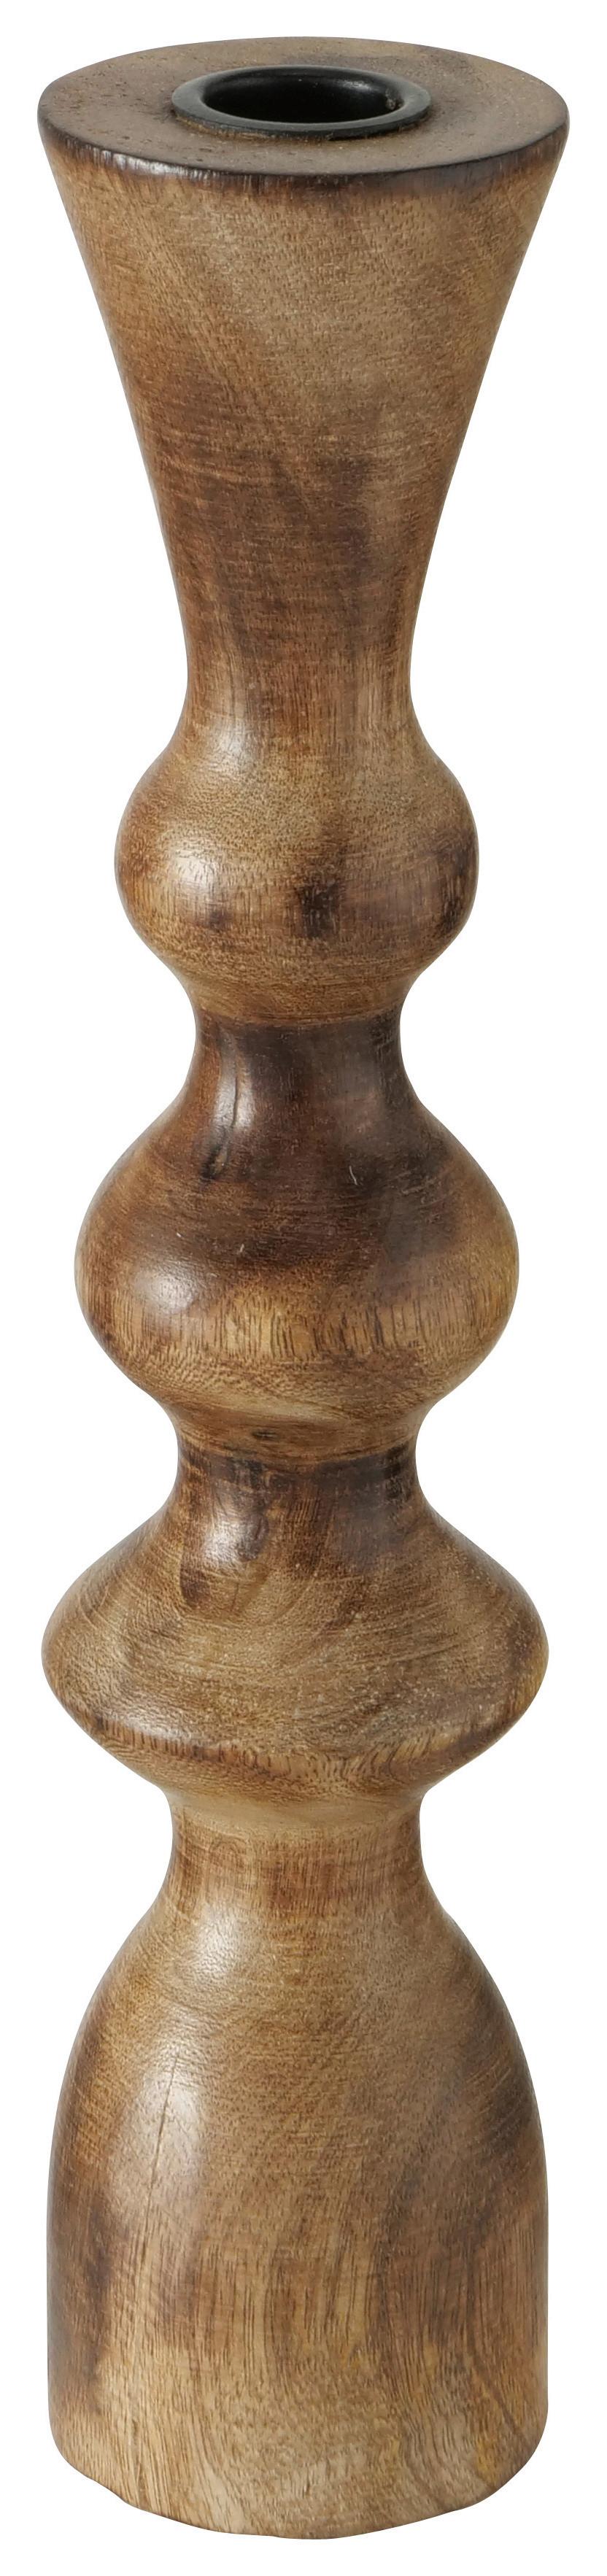 Svietnik Na Dlhé Sviečky Caconda, V: 30cm - prírodné farby, Štýlový, drevo (8/30/8cm) - Premium Living